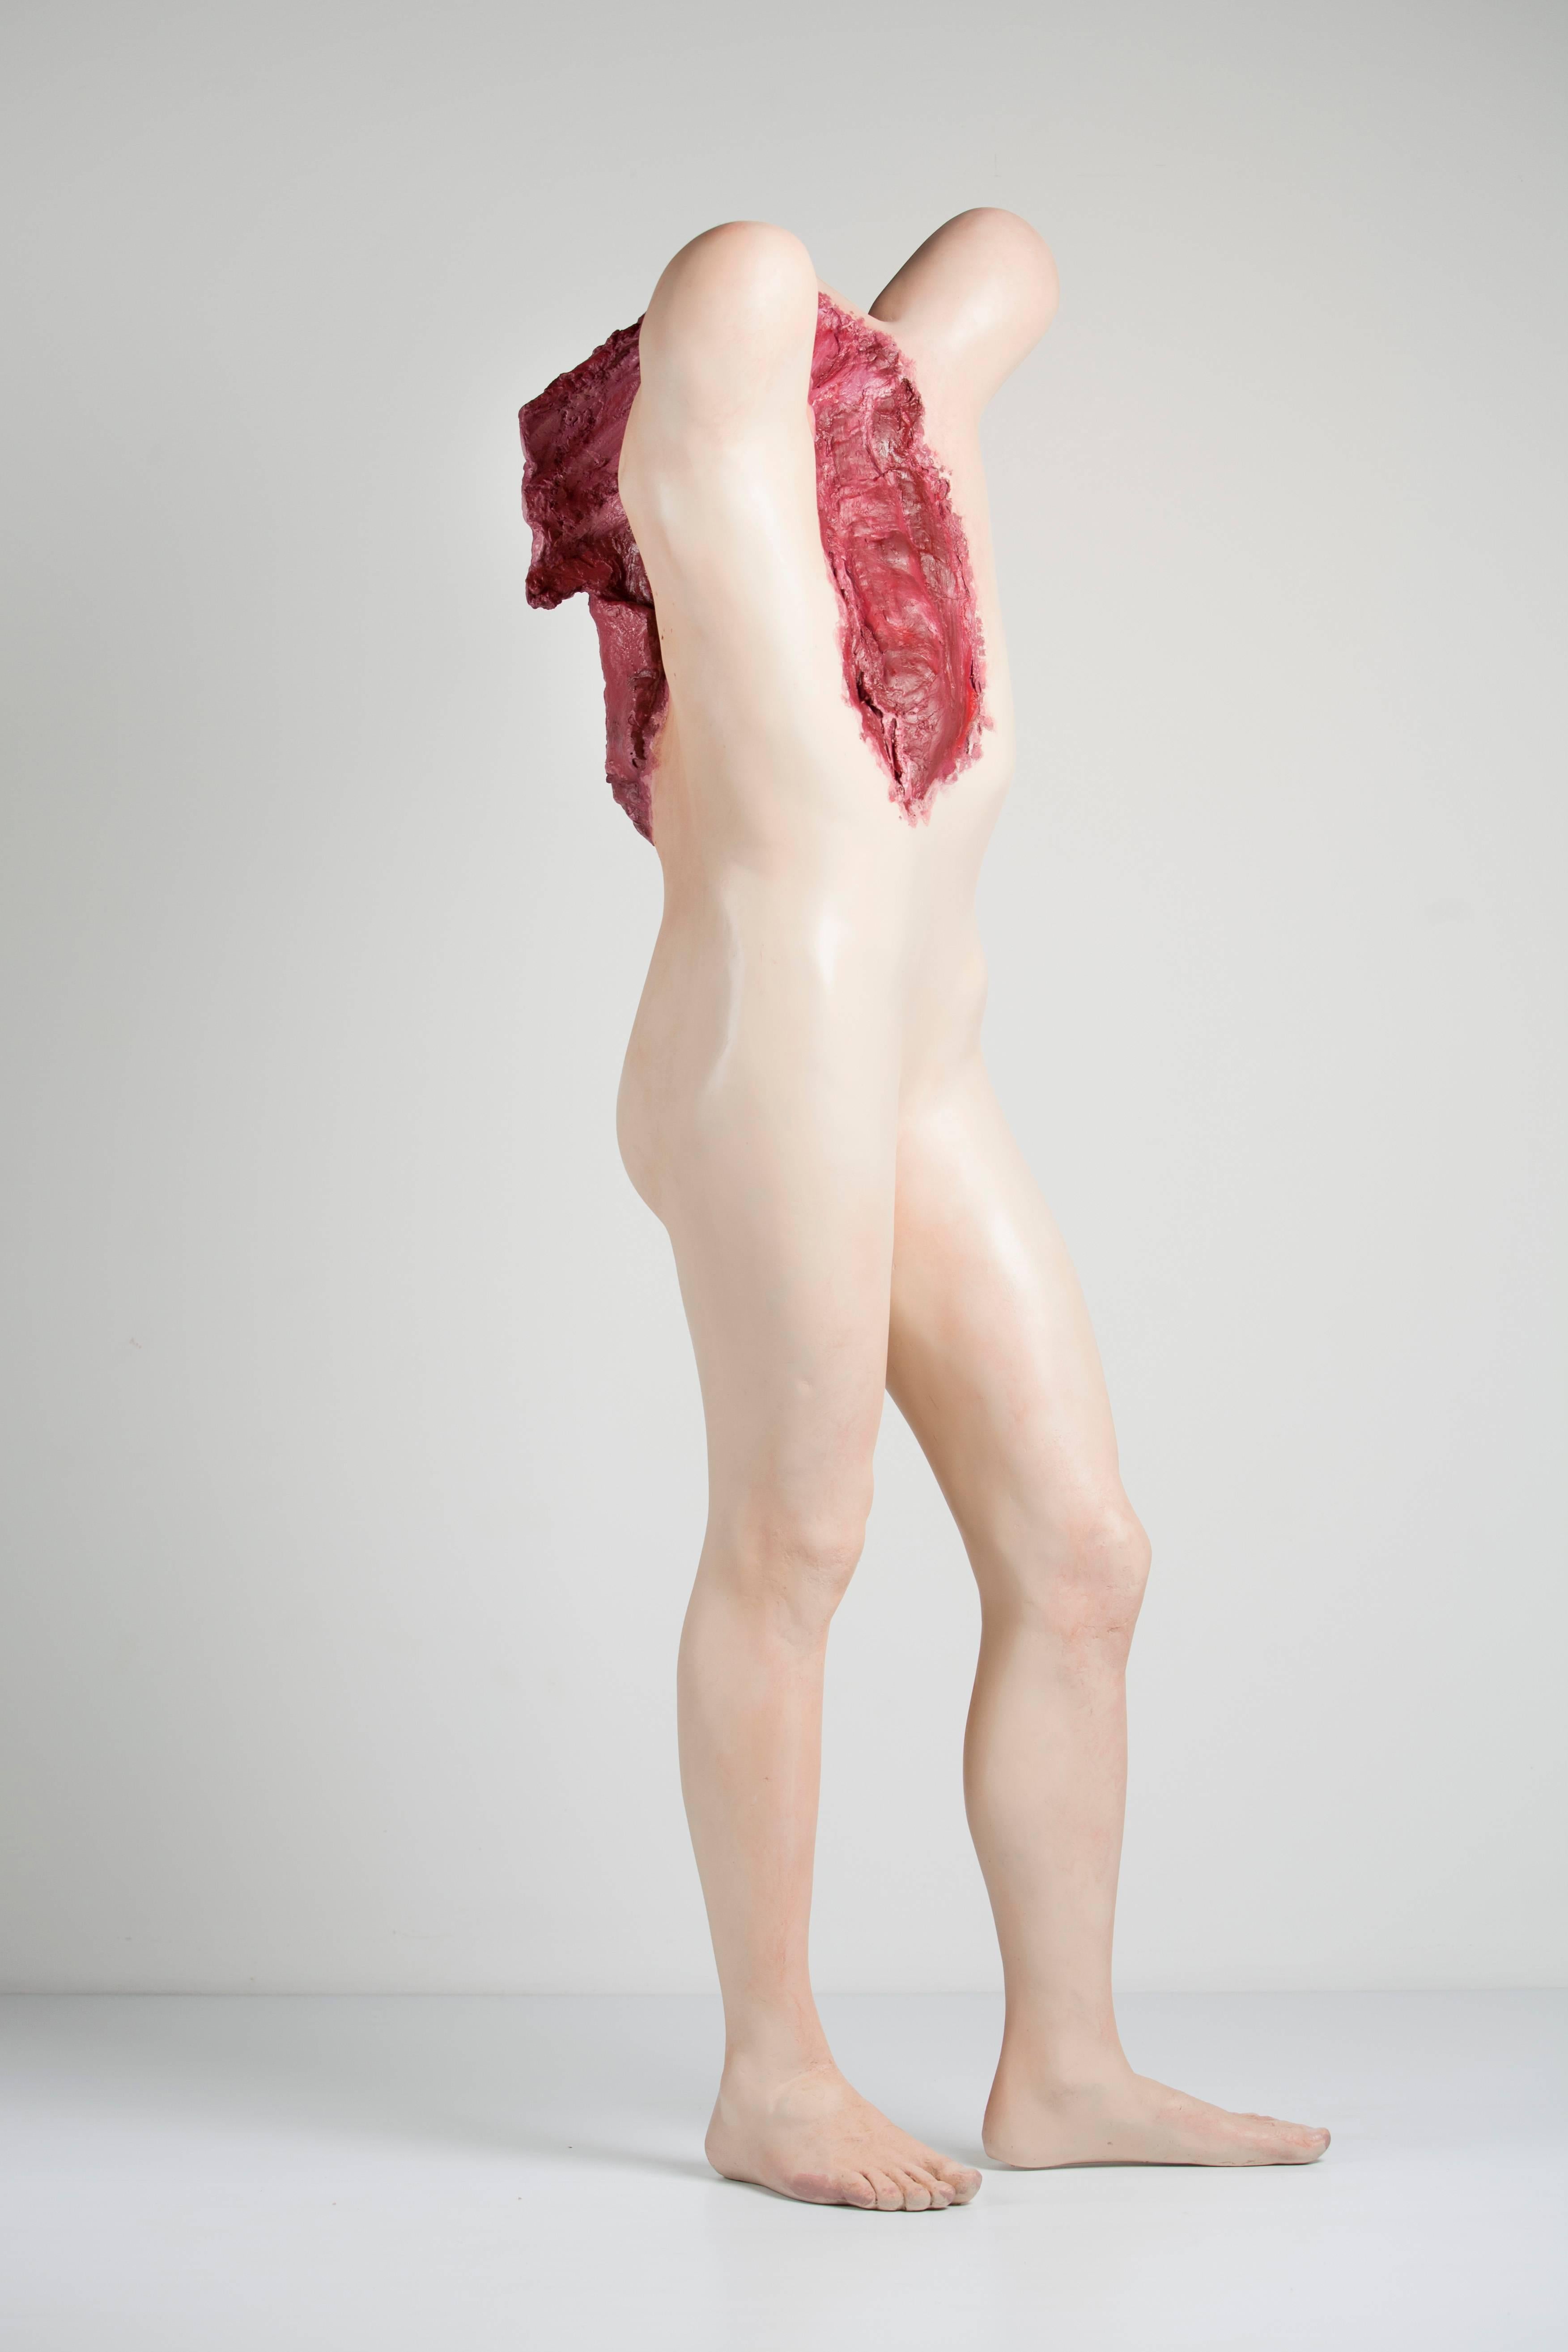 Pro-teen - Sculpture by Bevan Ramsay